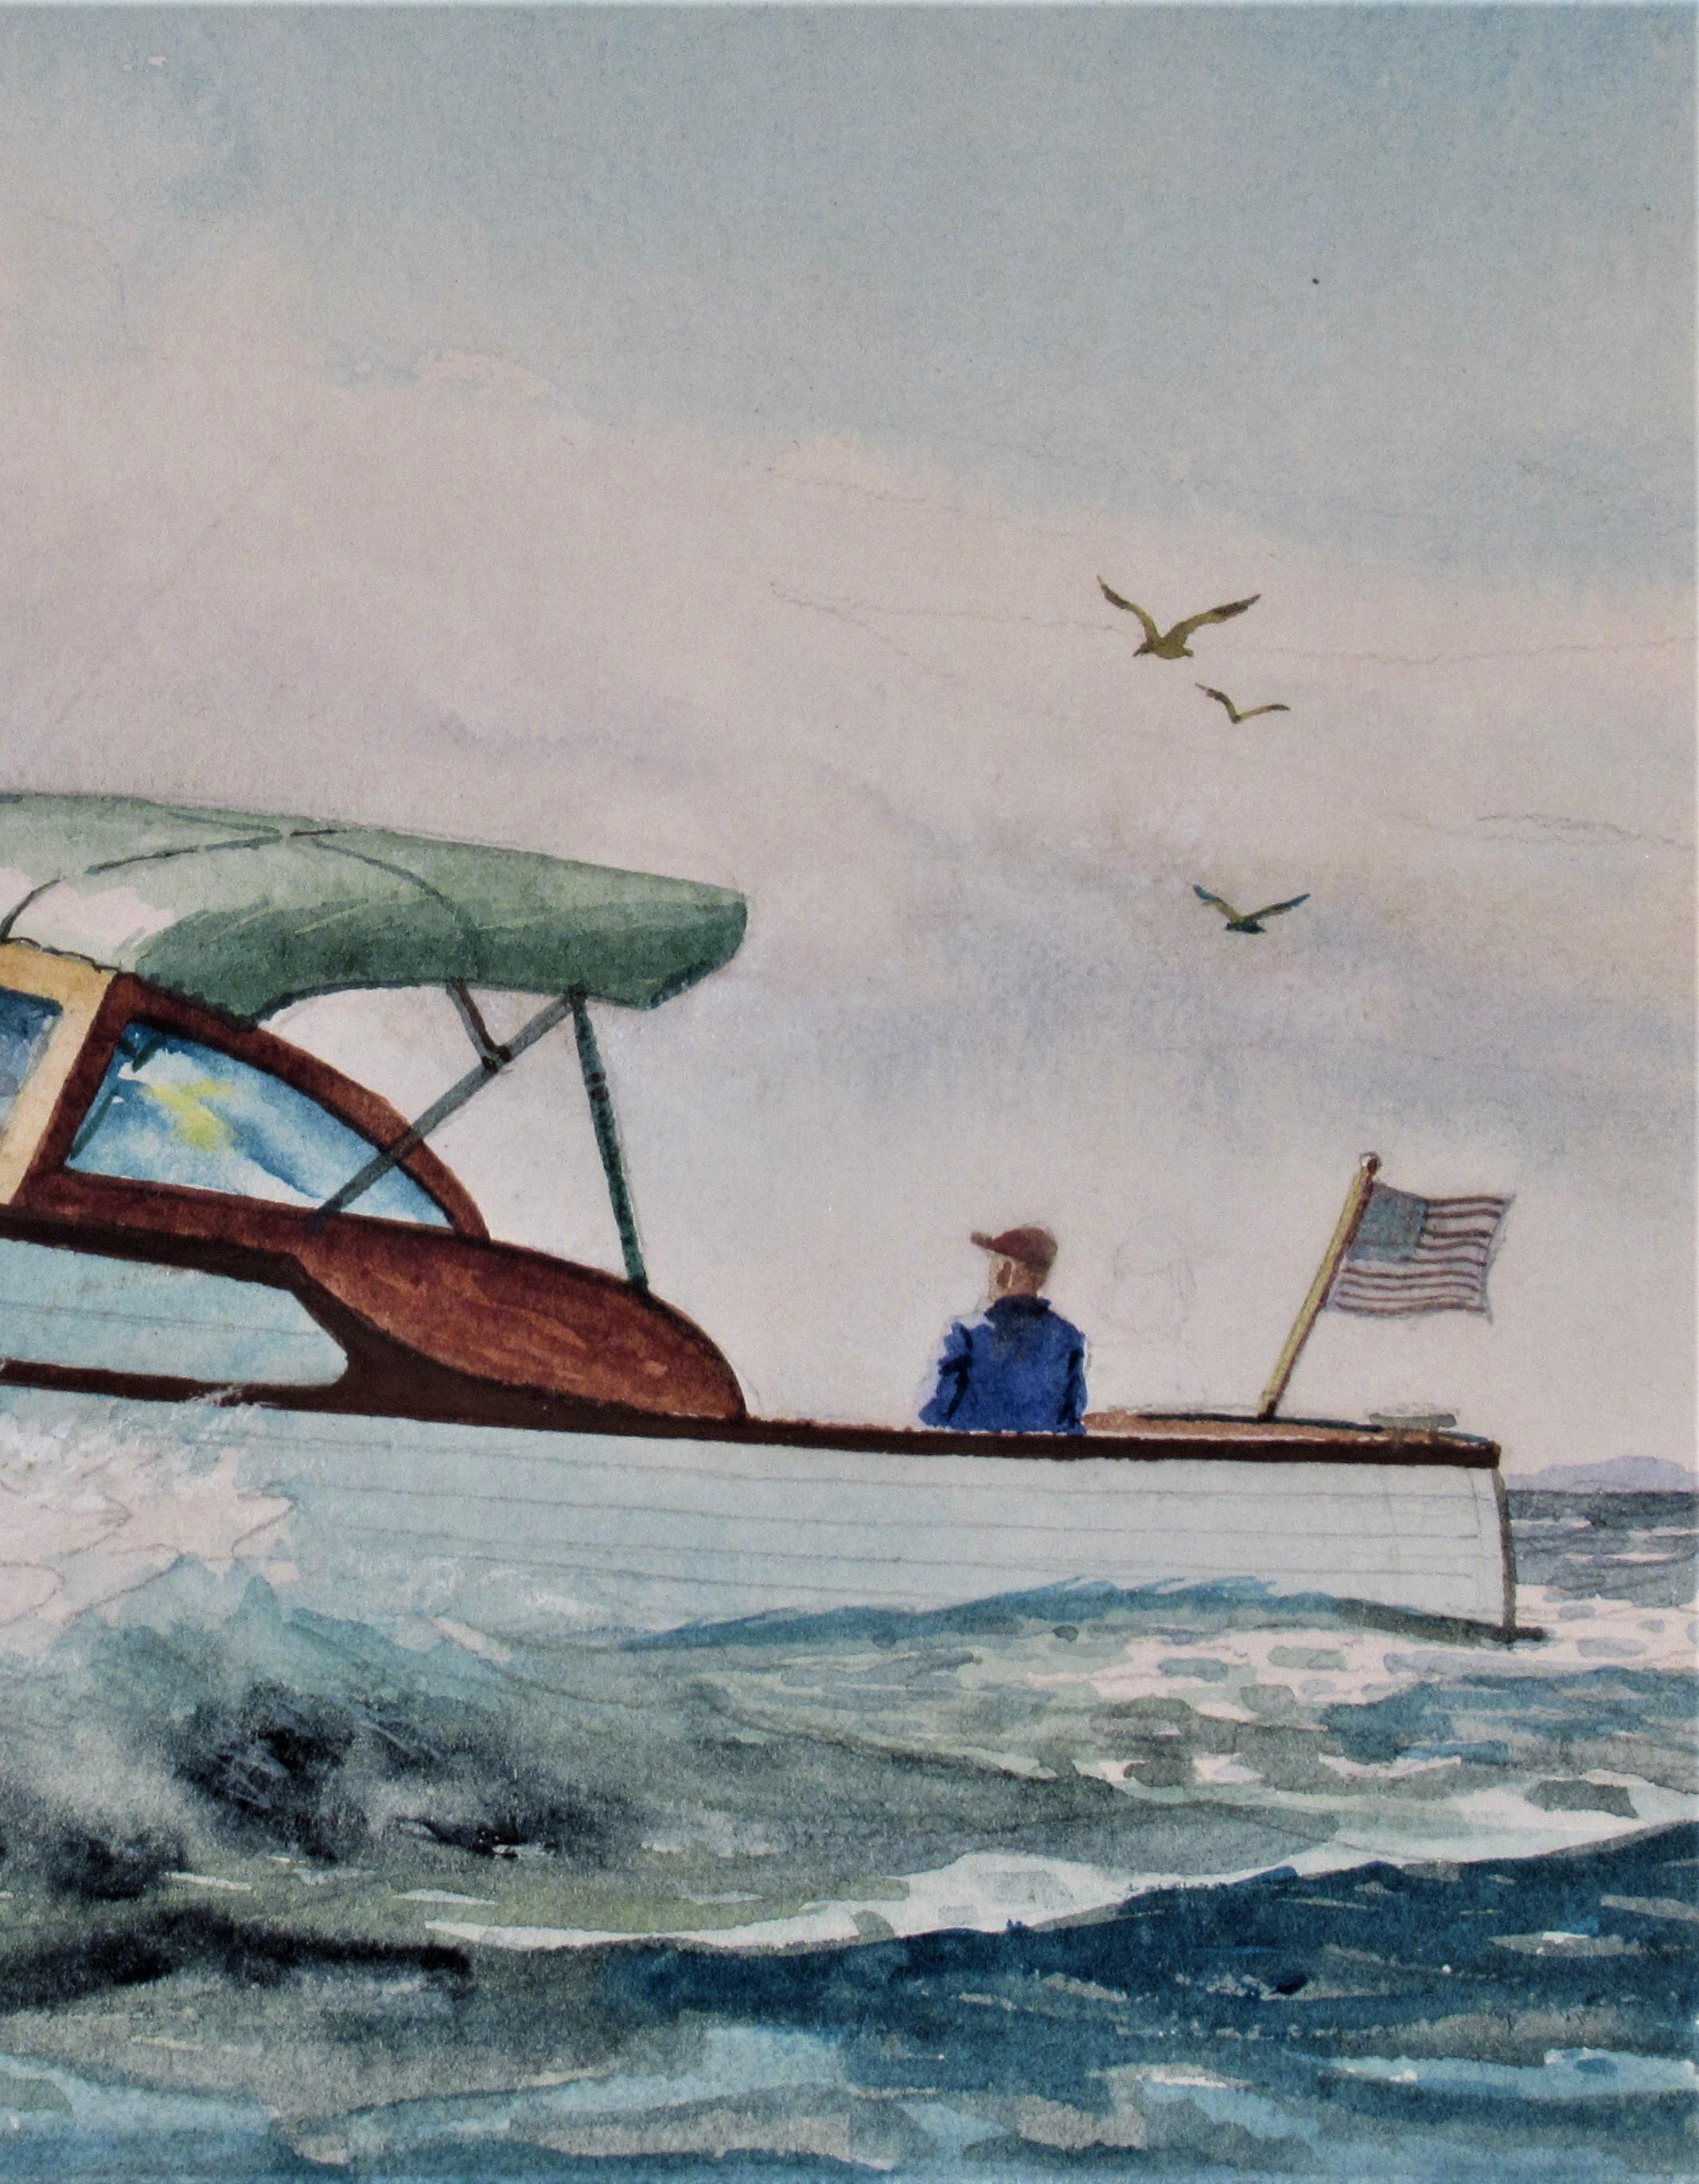 Runaboot - American Realist Art by C. Hjalmar Amundsen